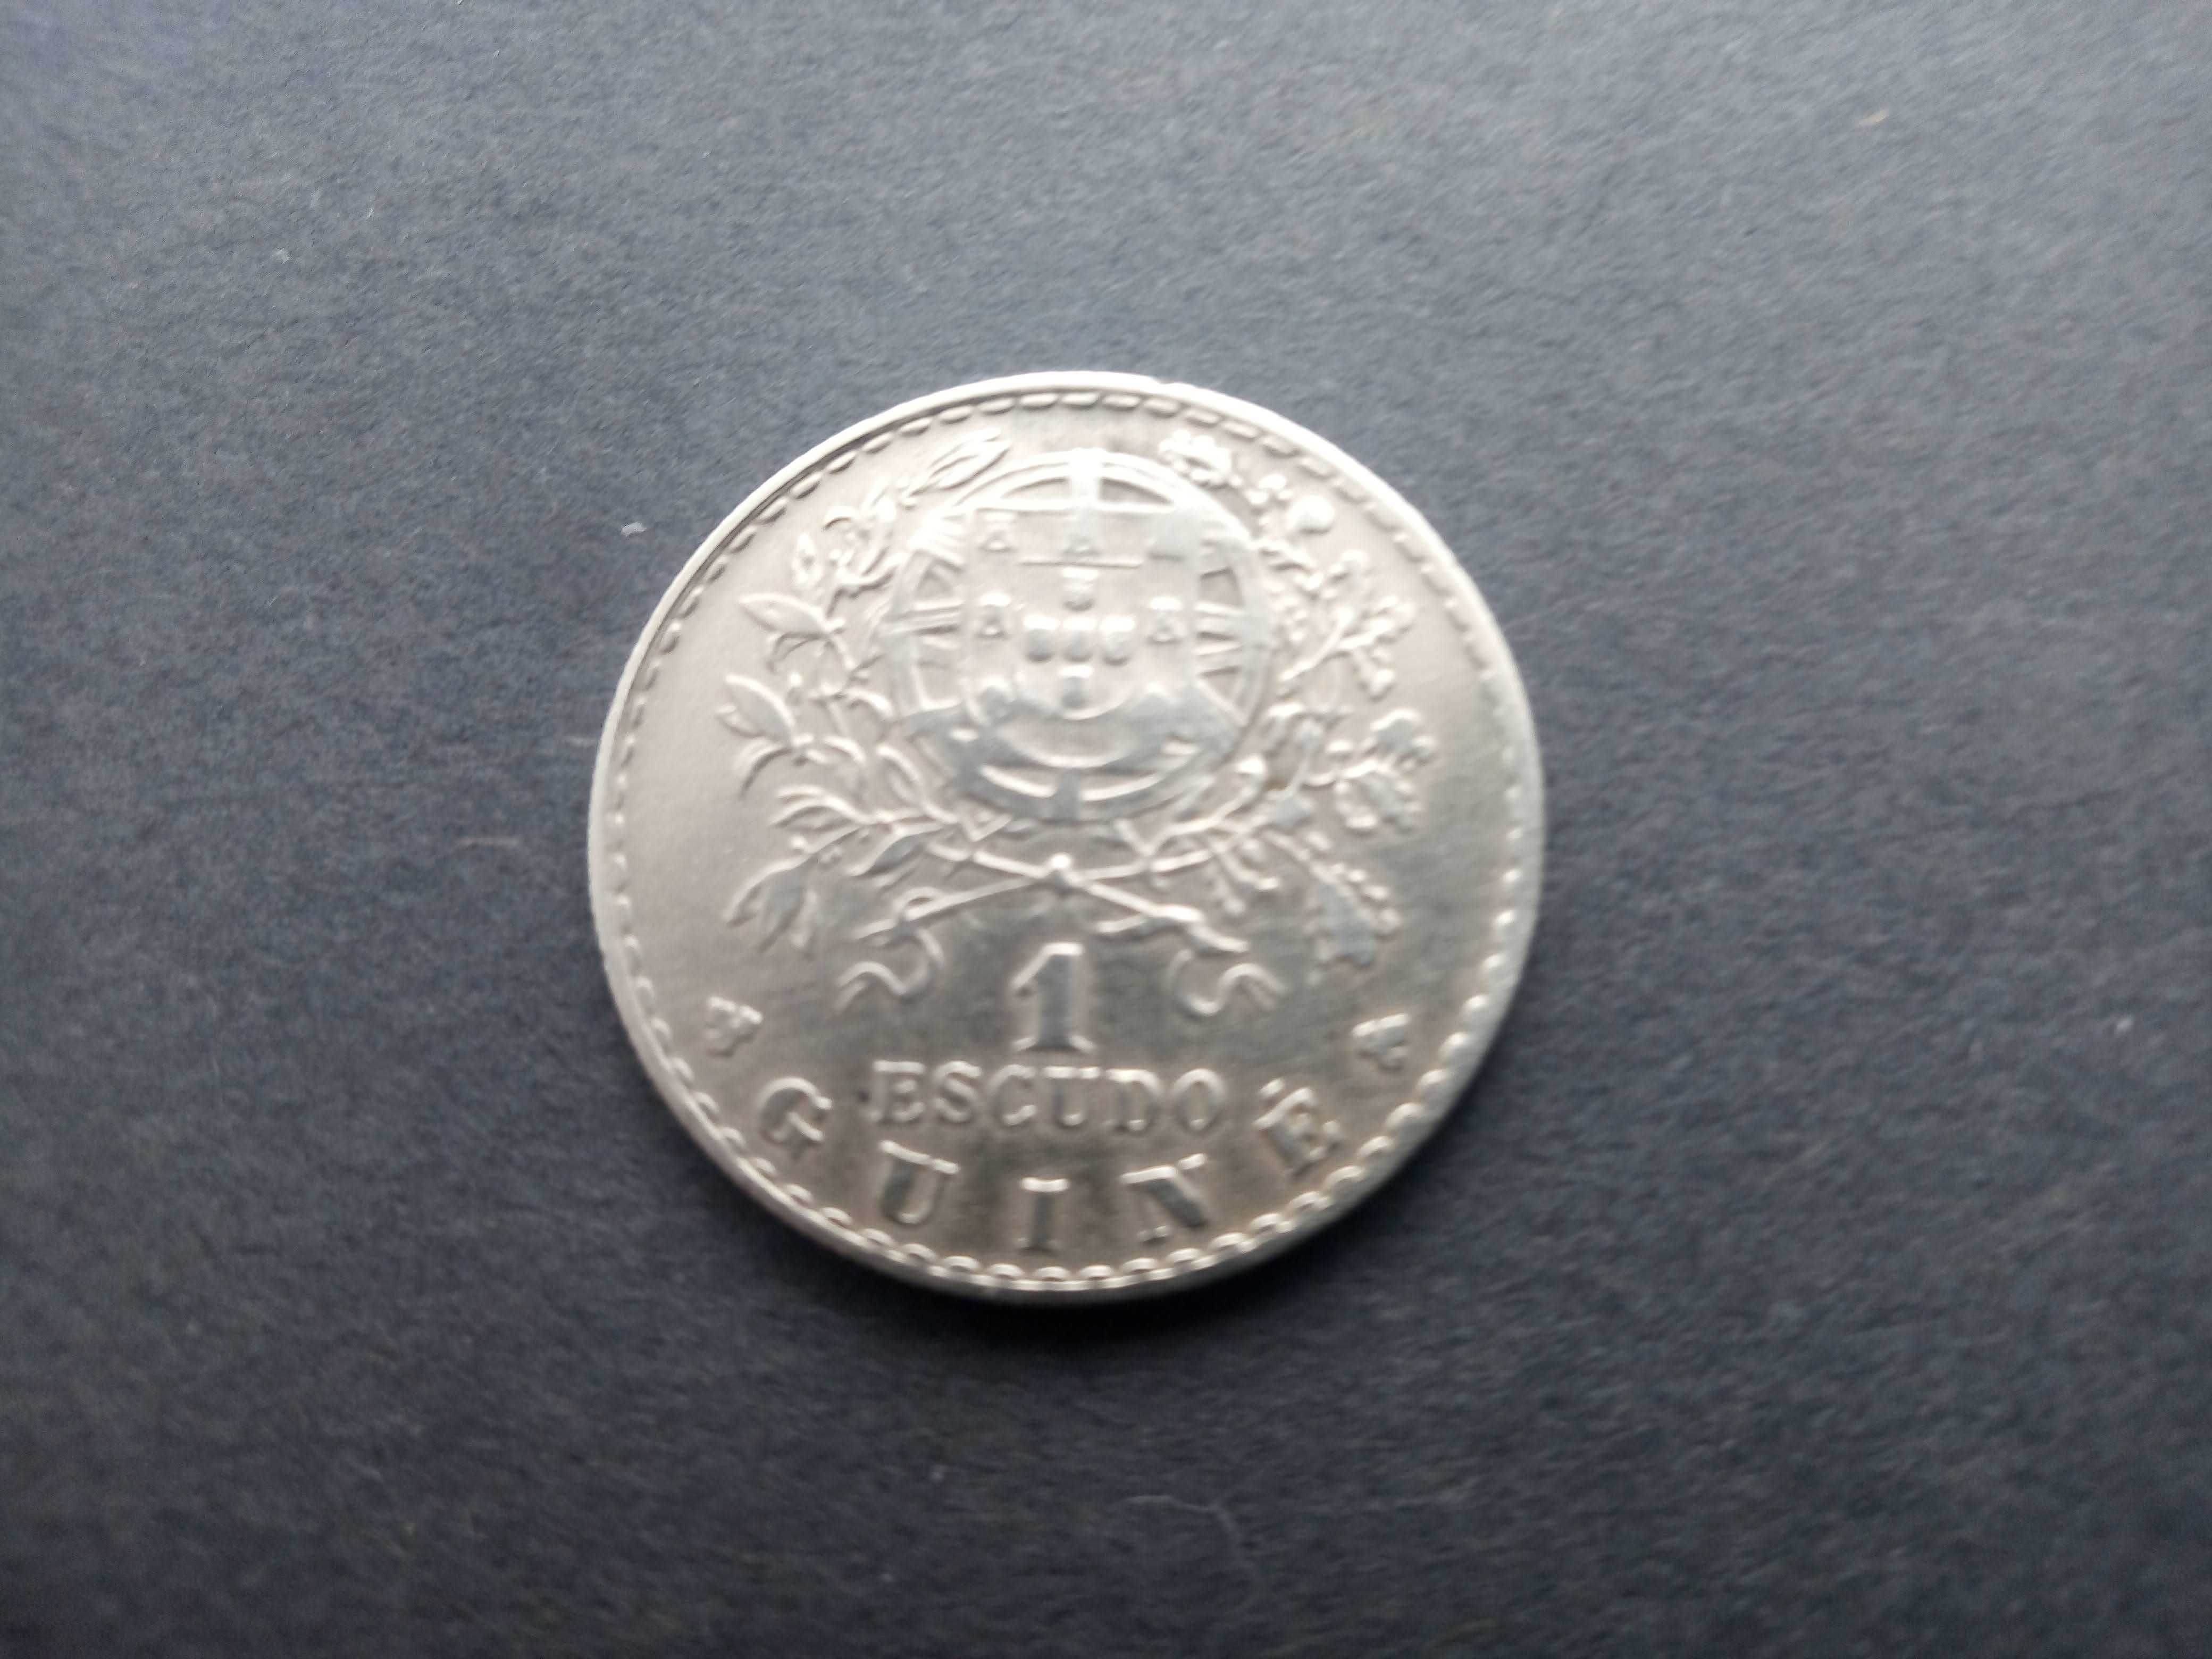 1 moeda de 1$00 1933 da Guiné Bela muito rara ver foto